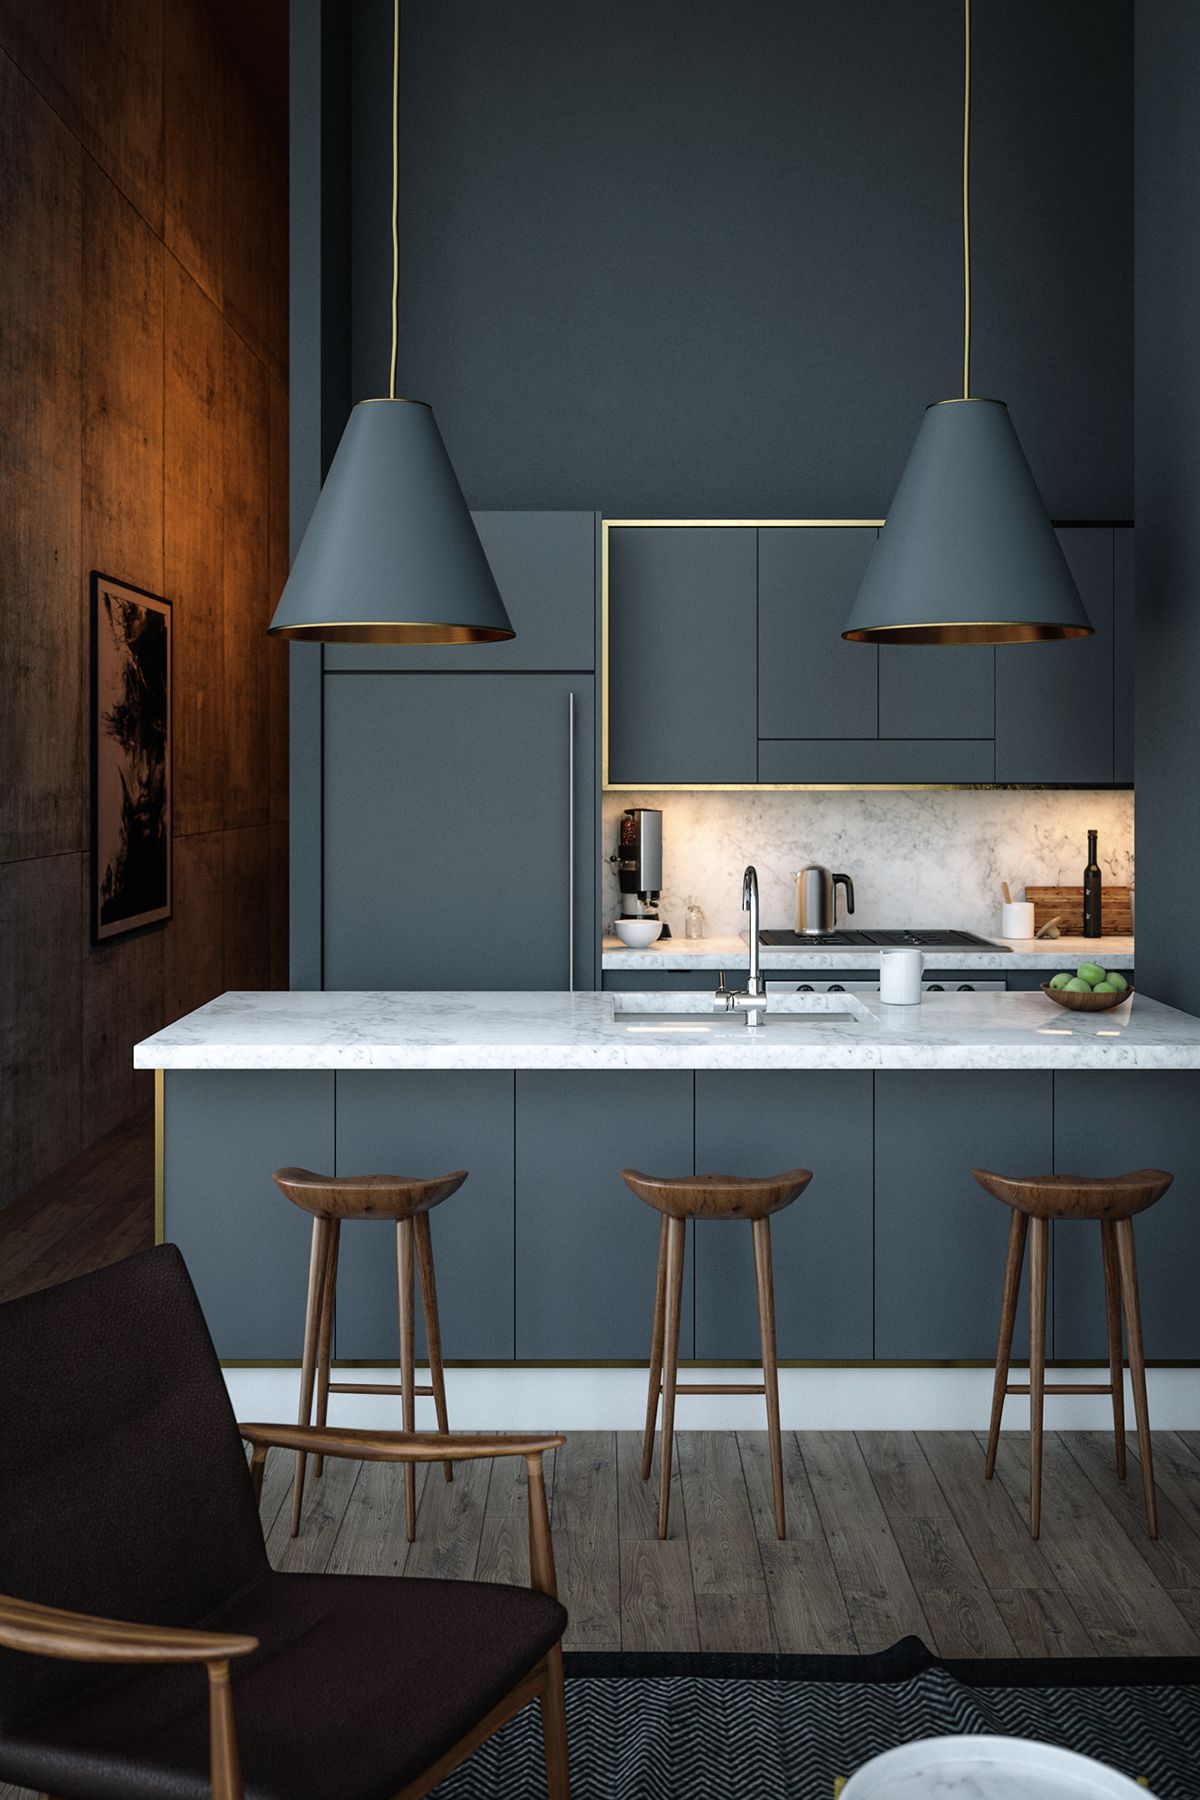 Căn bếp màu xám xanh với bàn đá cảm thạch và các chi tiết như ghế ăn, đèn chùm được đầu tư kỹ lưỡng. Cách sử dụng ánh sáng đèn led trong mẫu thiết kế này cũng đặc biệt ấn tượng.